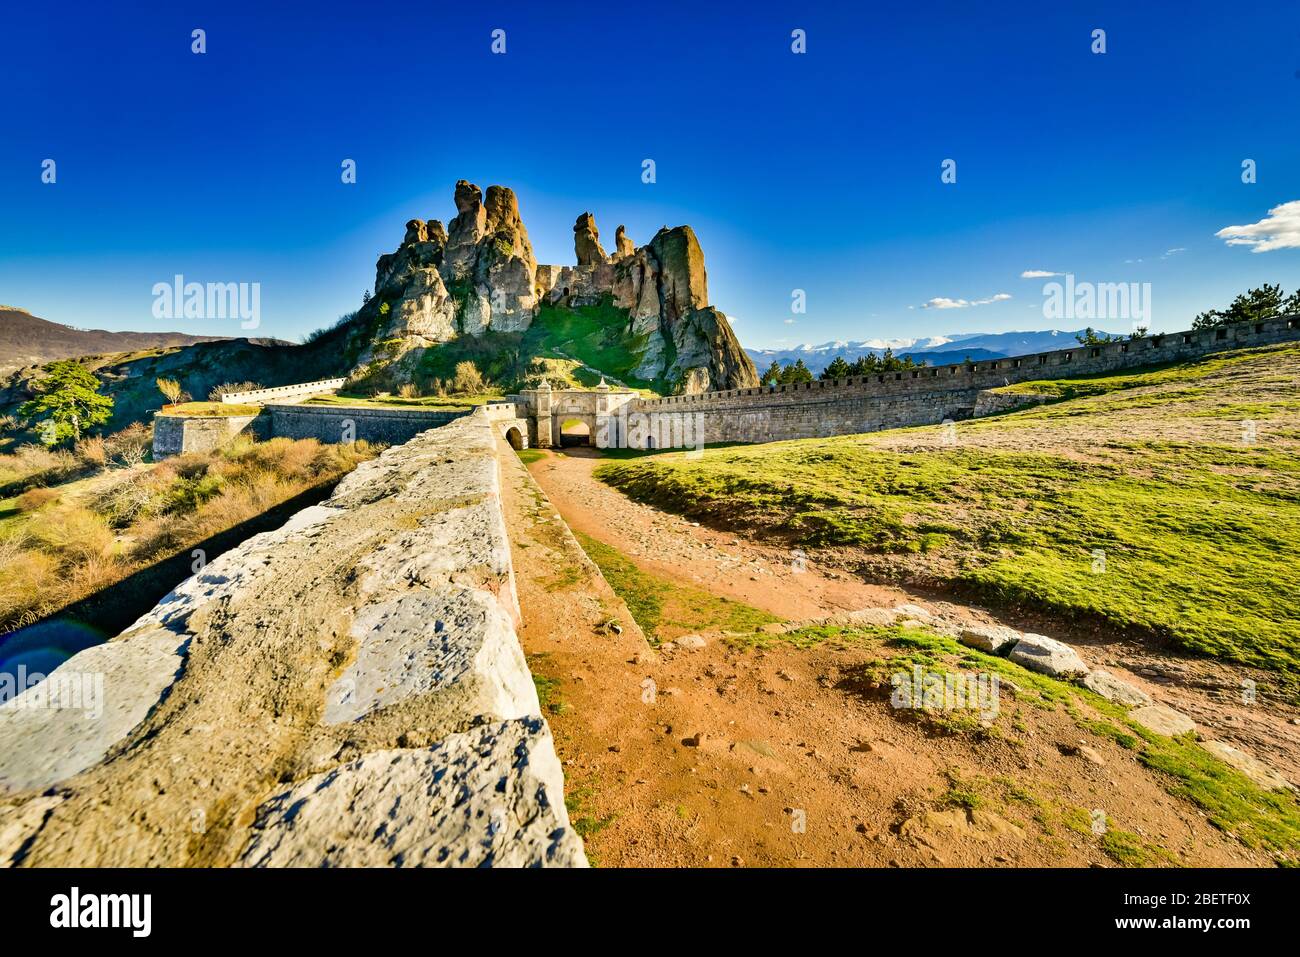 Vue panoramique sur la forteresse Epic de Belogradchik, dans les montagnes des Balkans, dans le nord-ouest de la Bulgarie; les bastions les mieux préservées de Bulgarie Banque D'Images